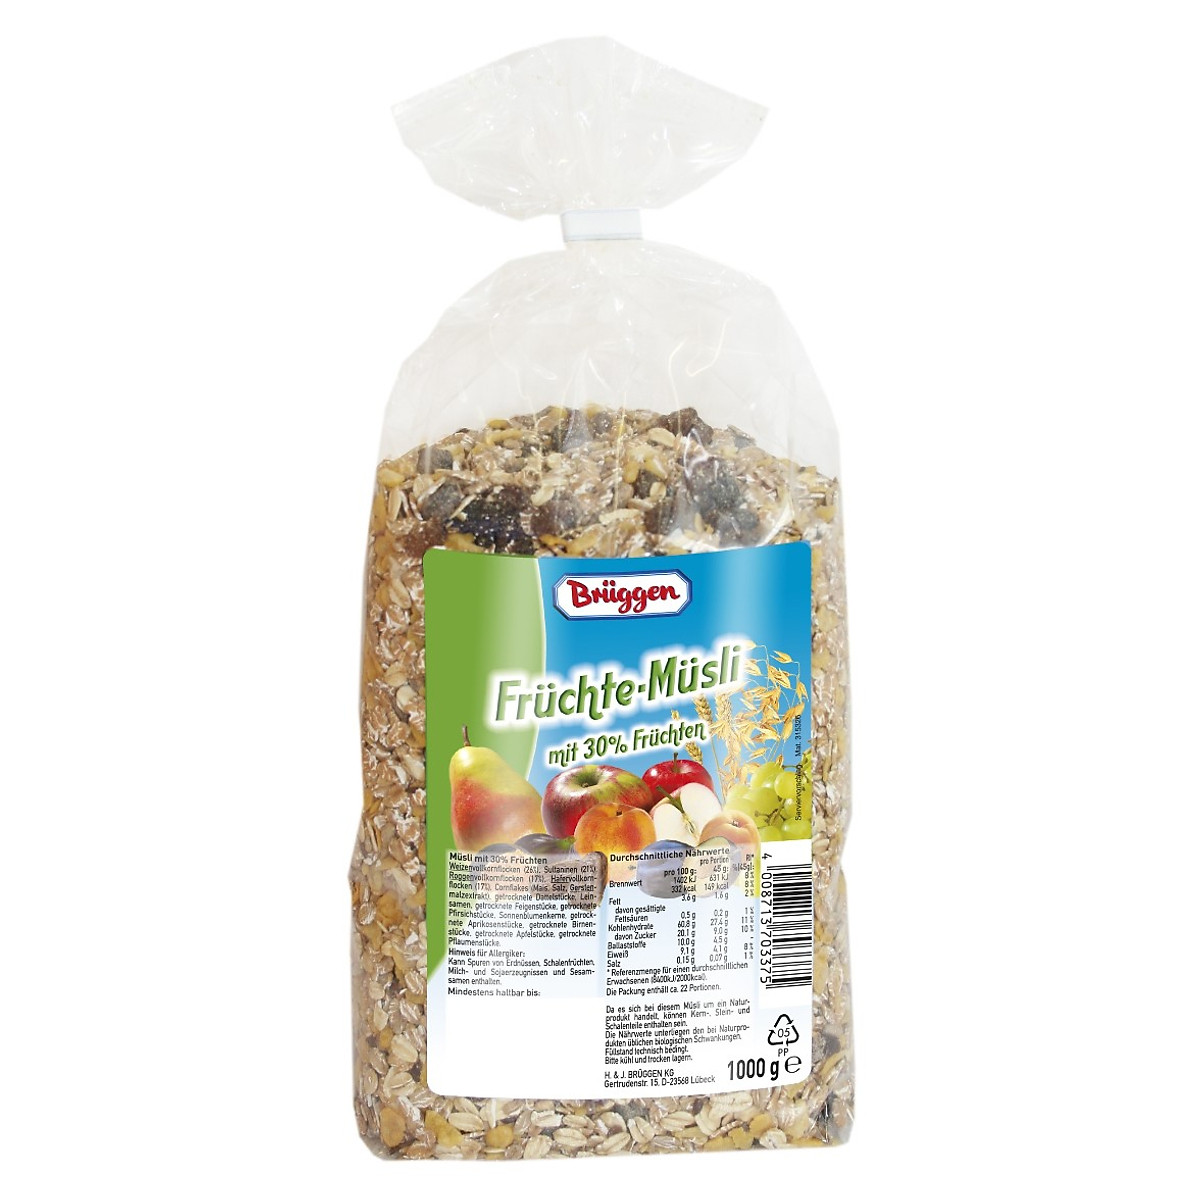 KM ĐẶC BIỆT Ngũ cốc Bruggen Fruchte Musli Đức Bịch 1kg 30% Trái cây sấy